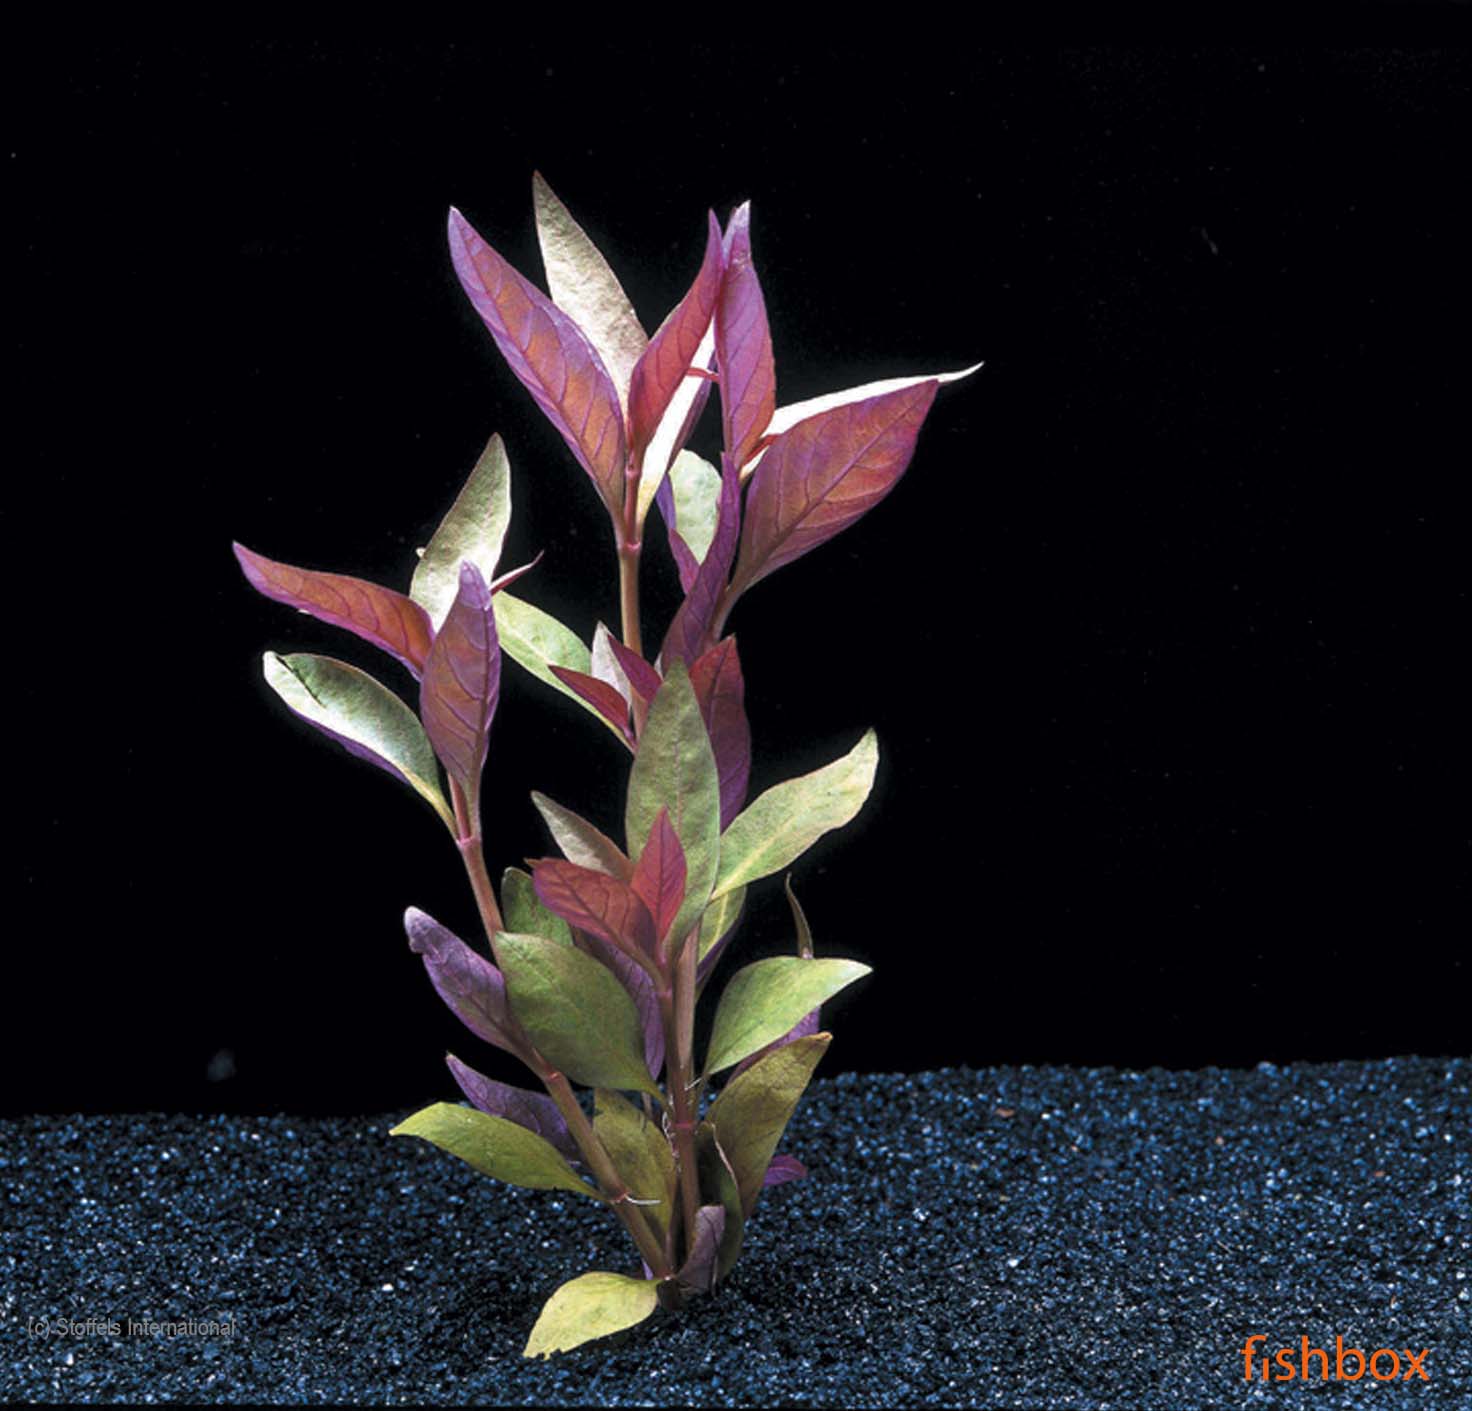 Althernanthera Lilacina - fishbox